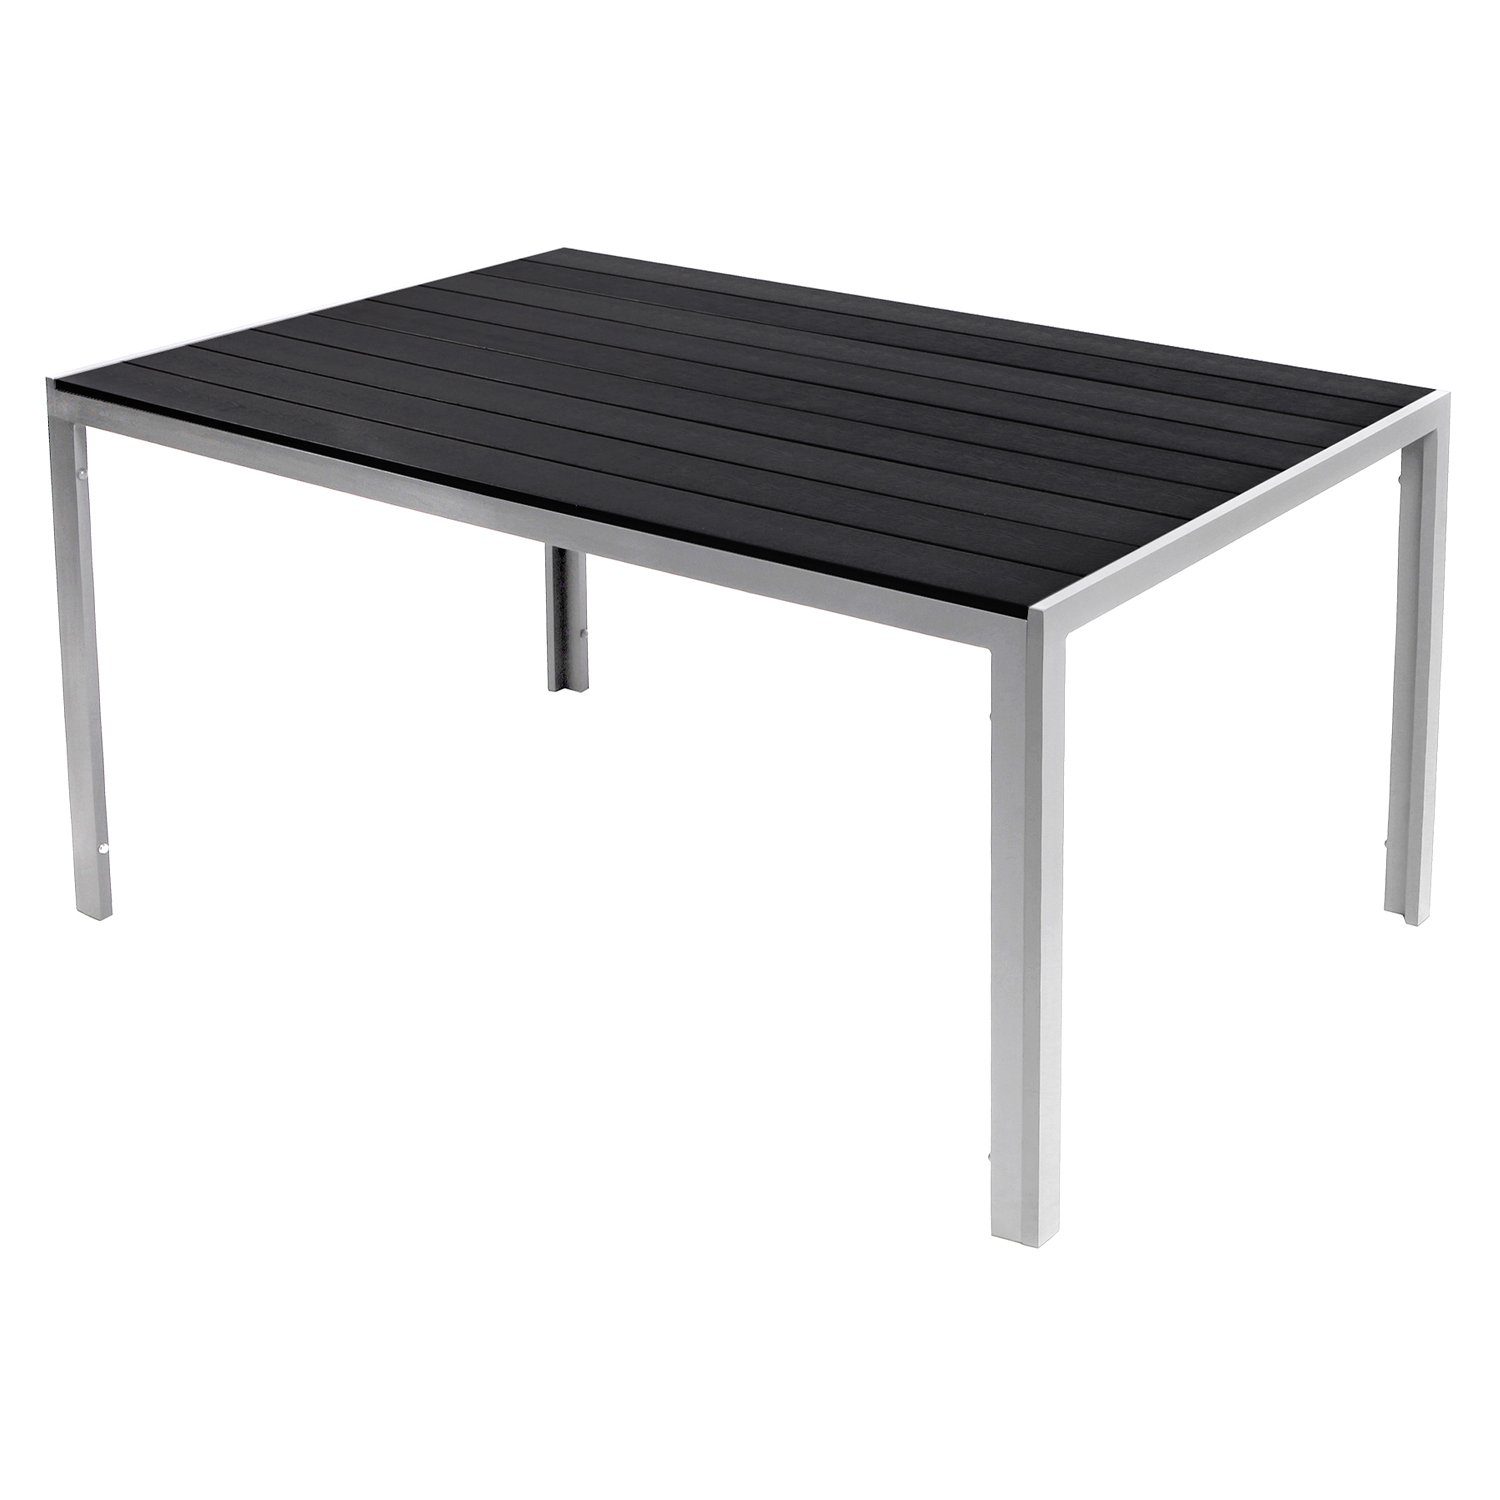 Non-Wood Schwarz / INDA-Exclusiv XL Küchentisch Silber 180x90cm Aluminium Gartentisch